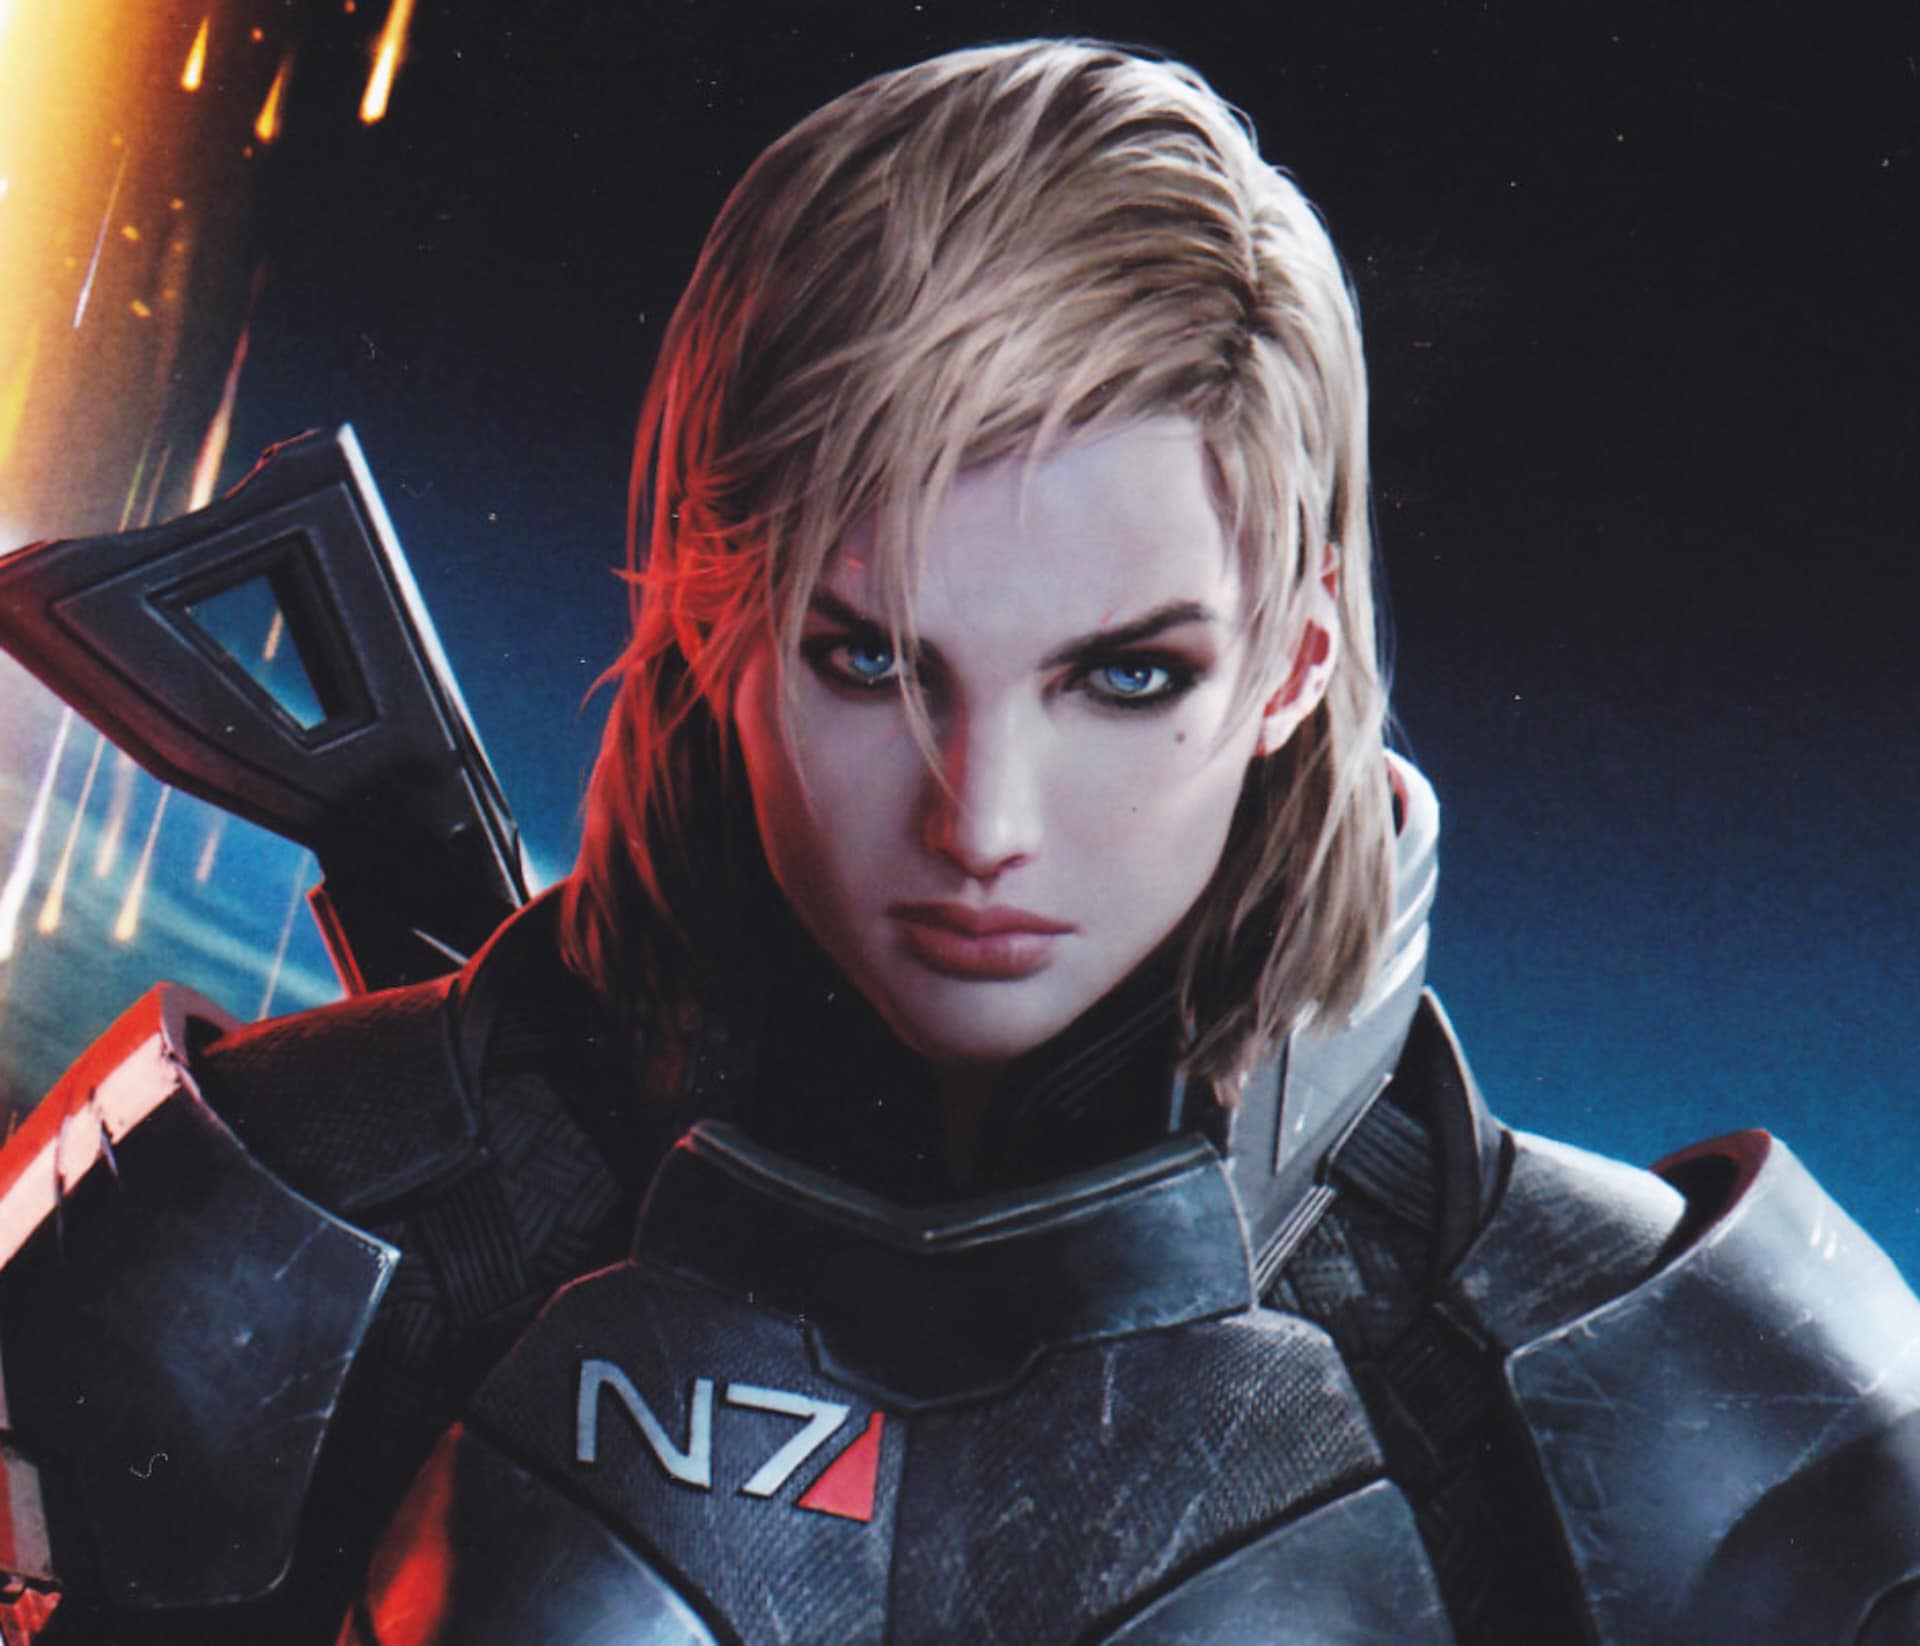 Mass Effect 3 Wallpaper (HD) - Video Games Blogger